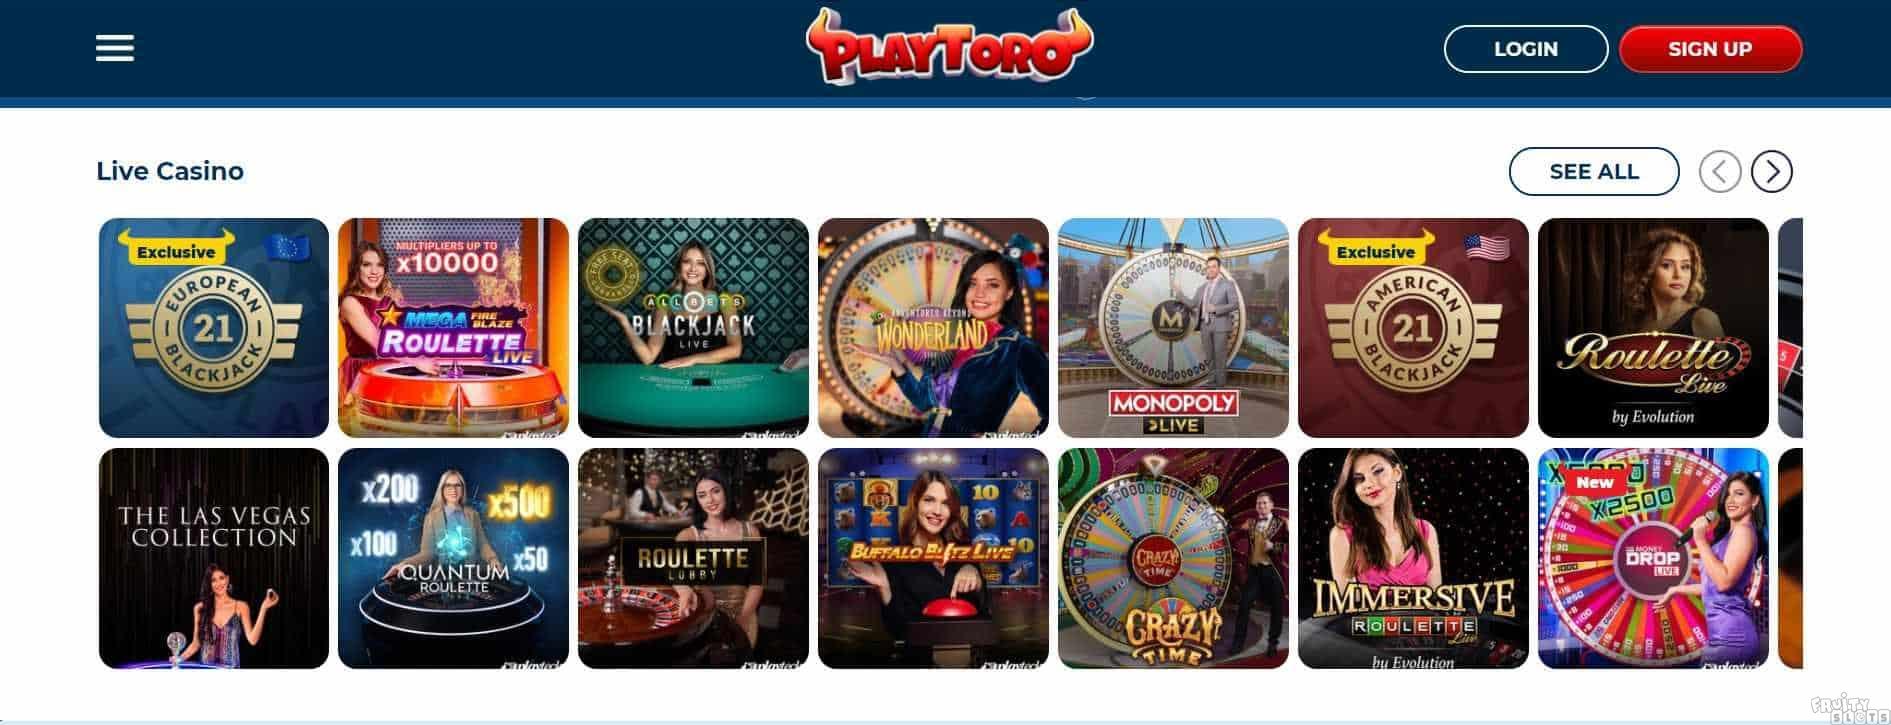 PlayToro Casino Live Casino